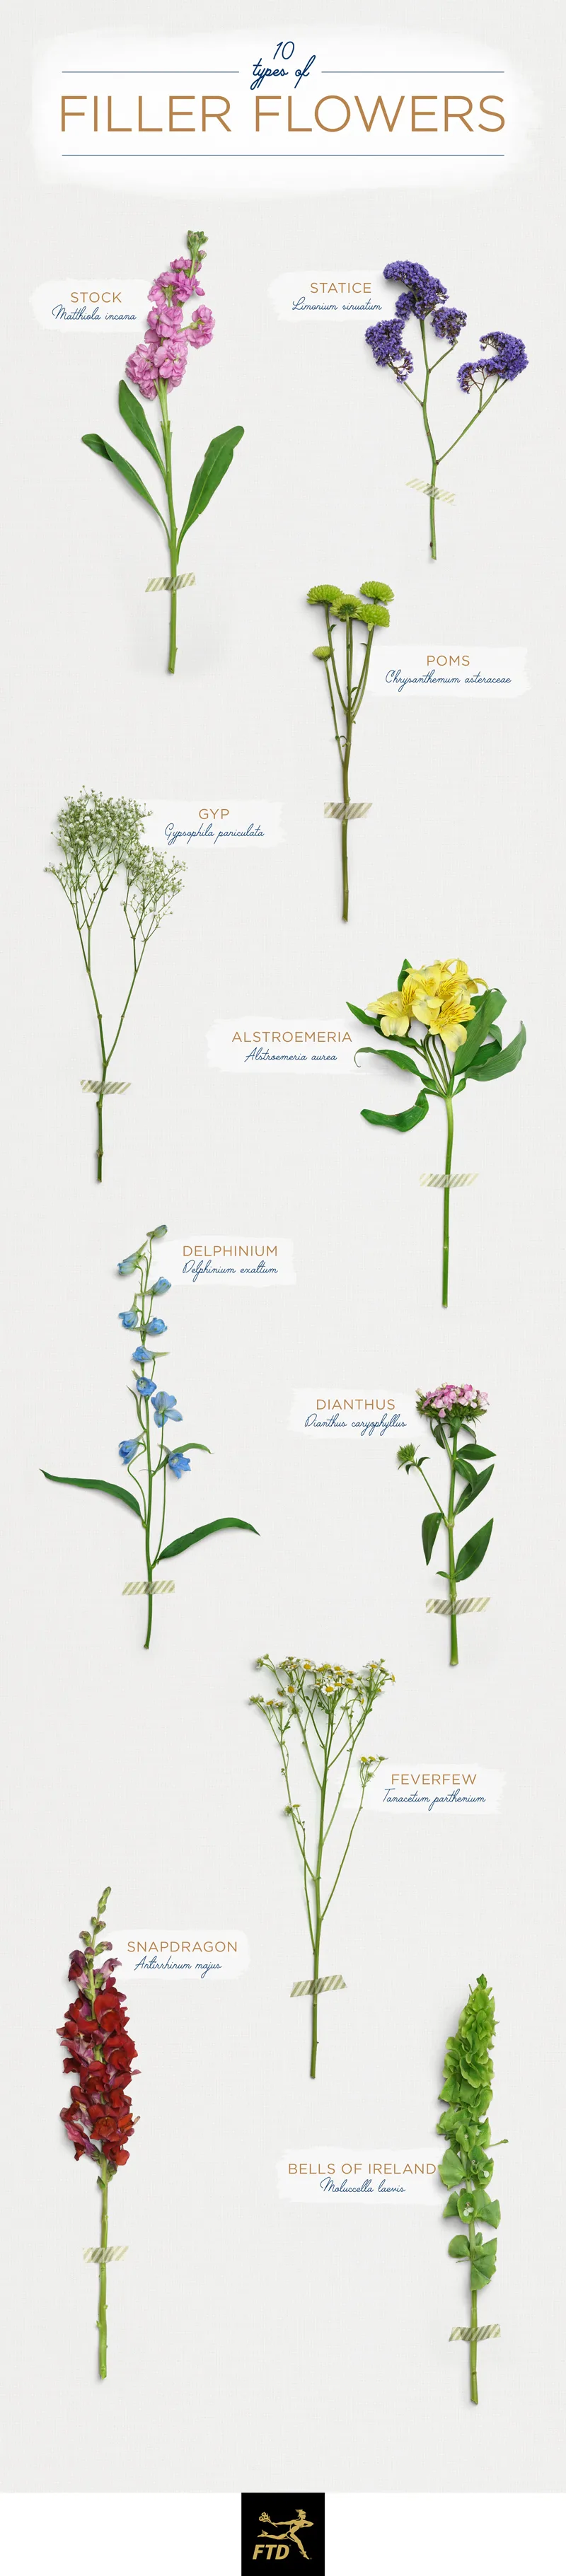 types-of-filler-flowers